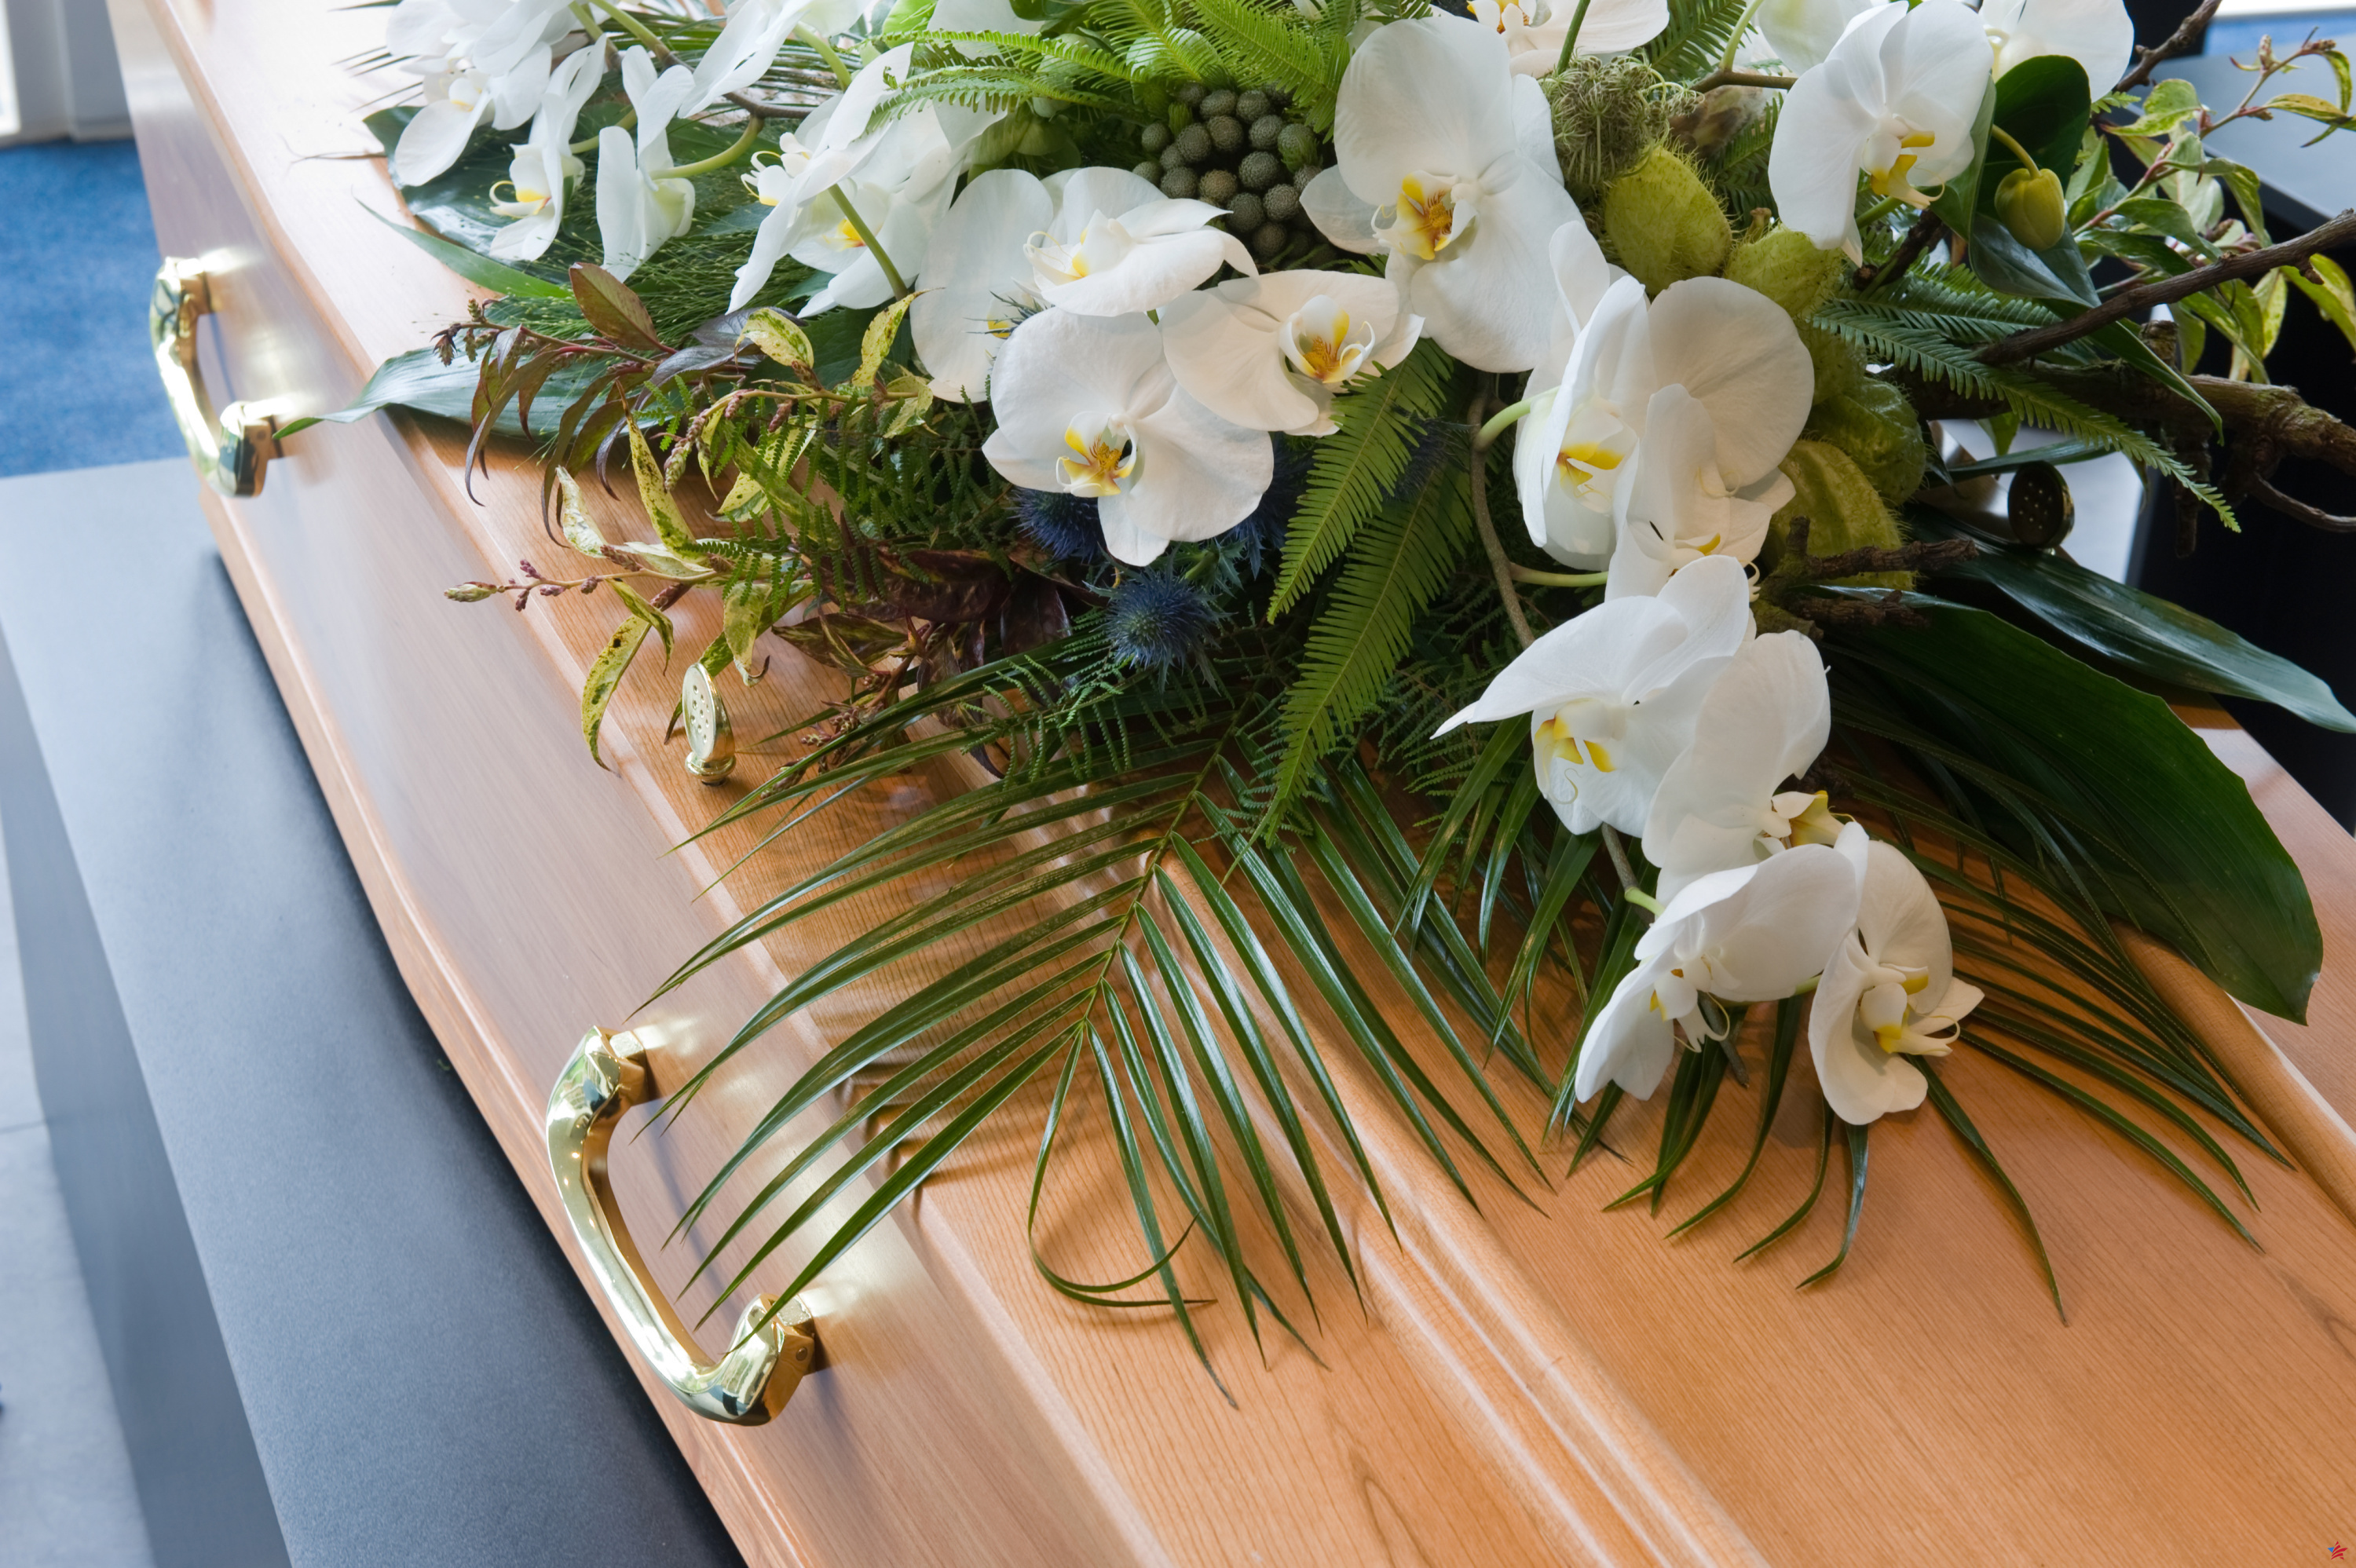 Cuerpo de canadiense que murió en Cuba es enterrado por error en Rusia